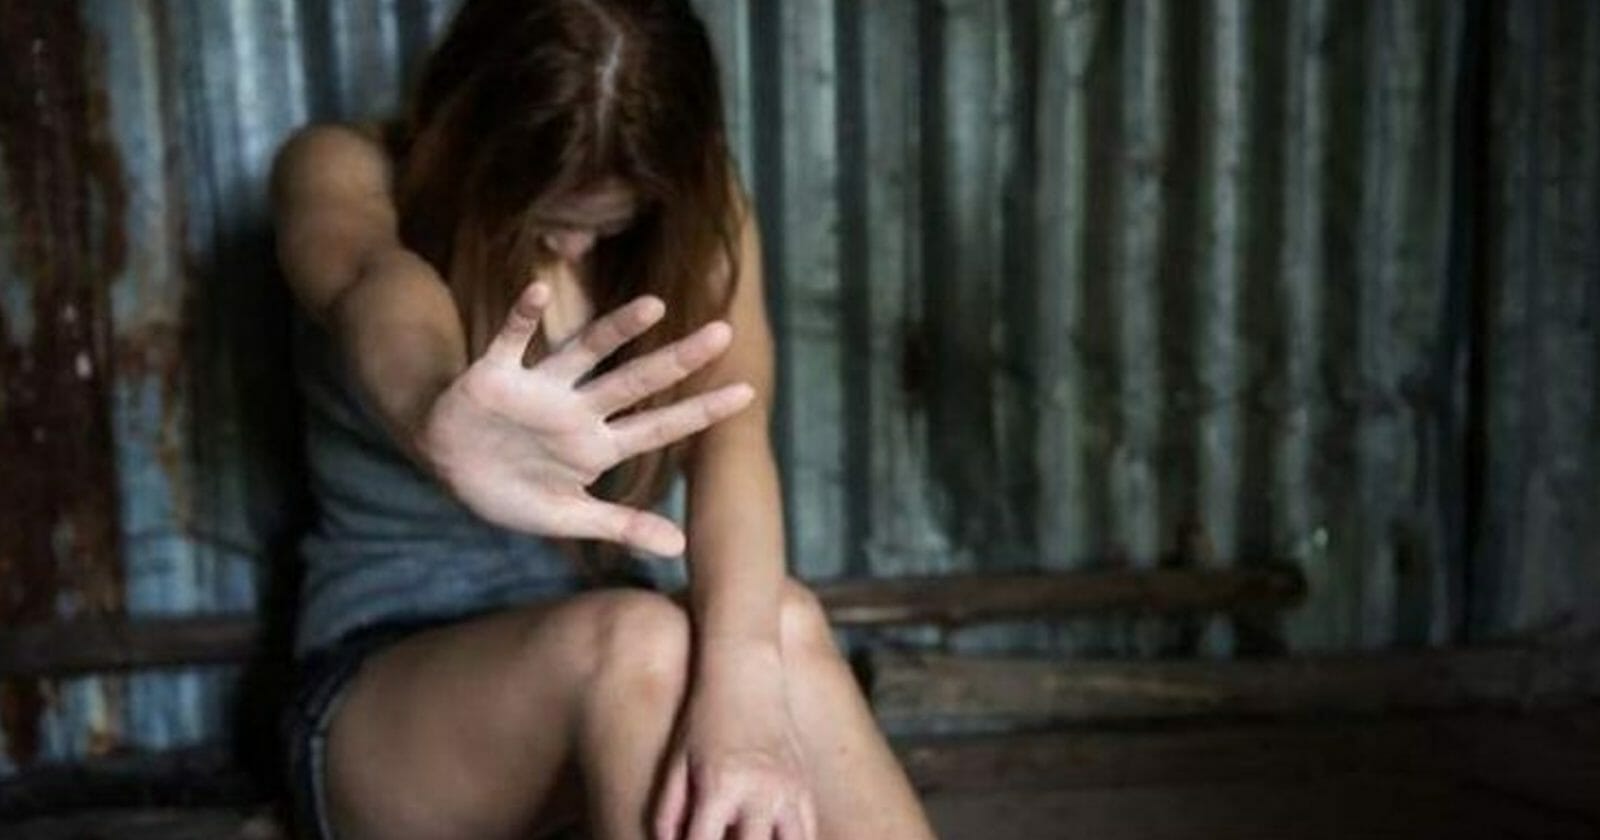 مدرب سياقة اغتصب امرأةً في الإمارات watanserb.com